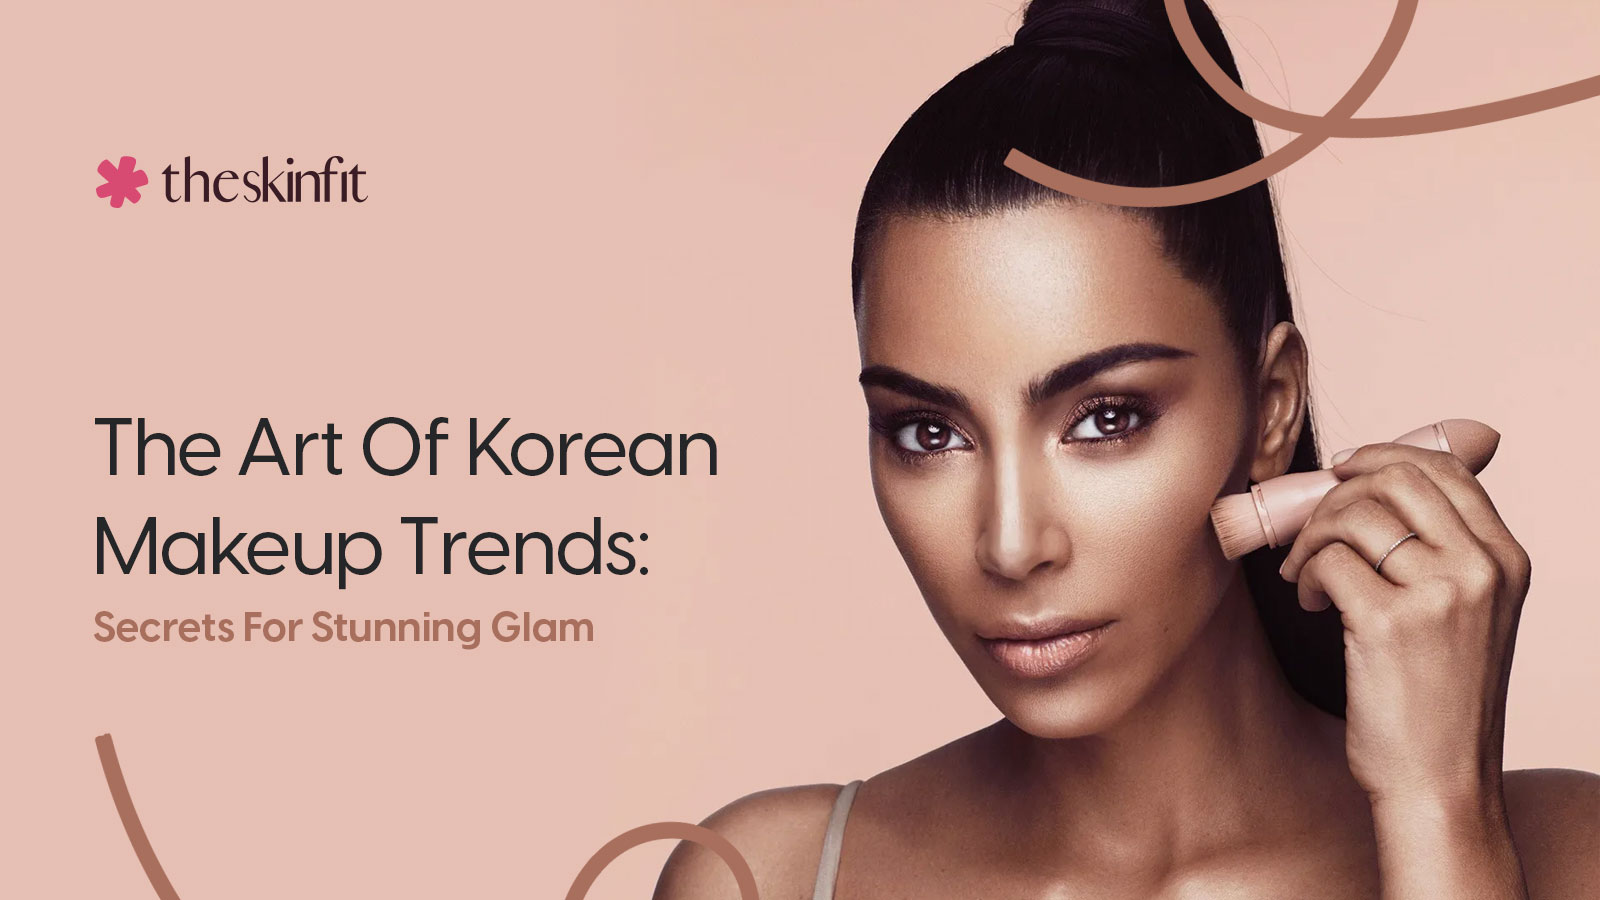 The Art Of Korean Makeup Trends: Secrets For Stunning Glam